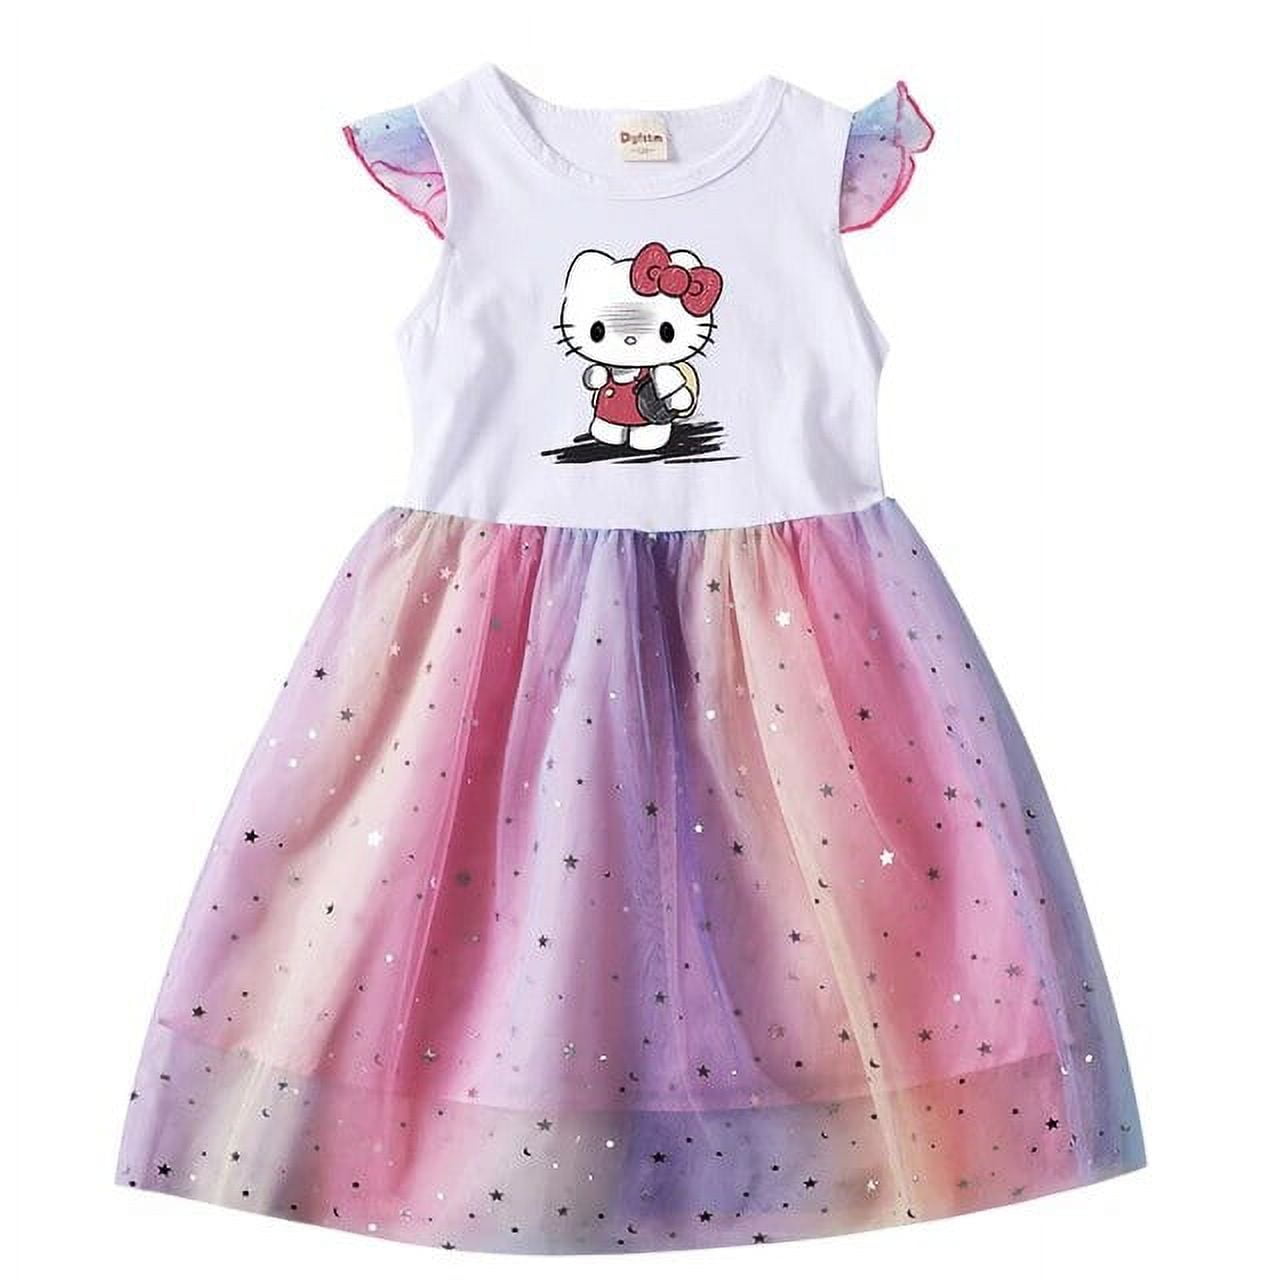 MINISO Hello Kitty Summer Kids Dresses for Girls Cartoon Short Sleeve ...